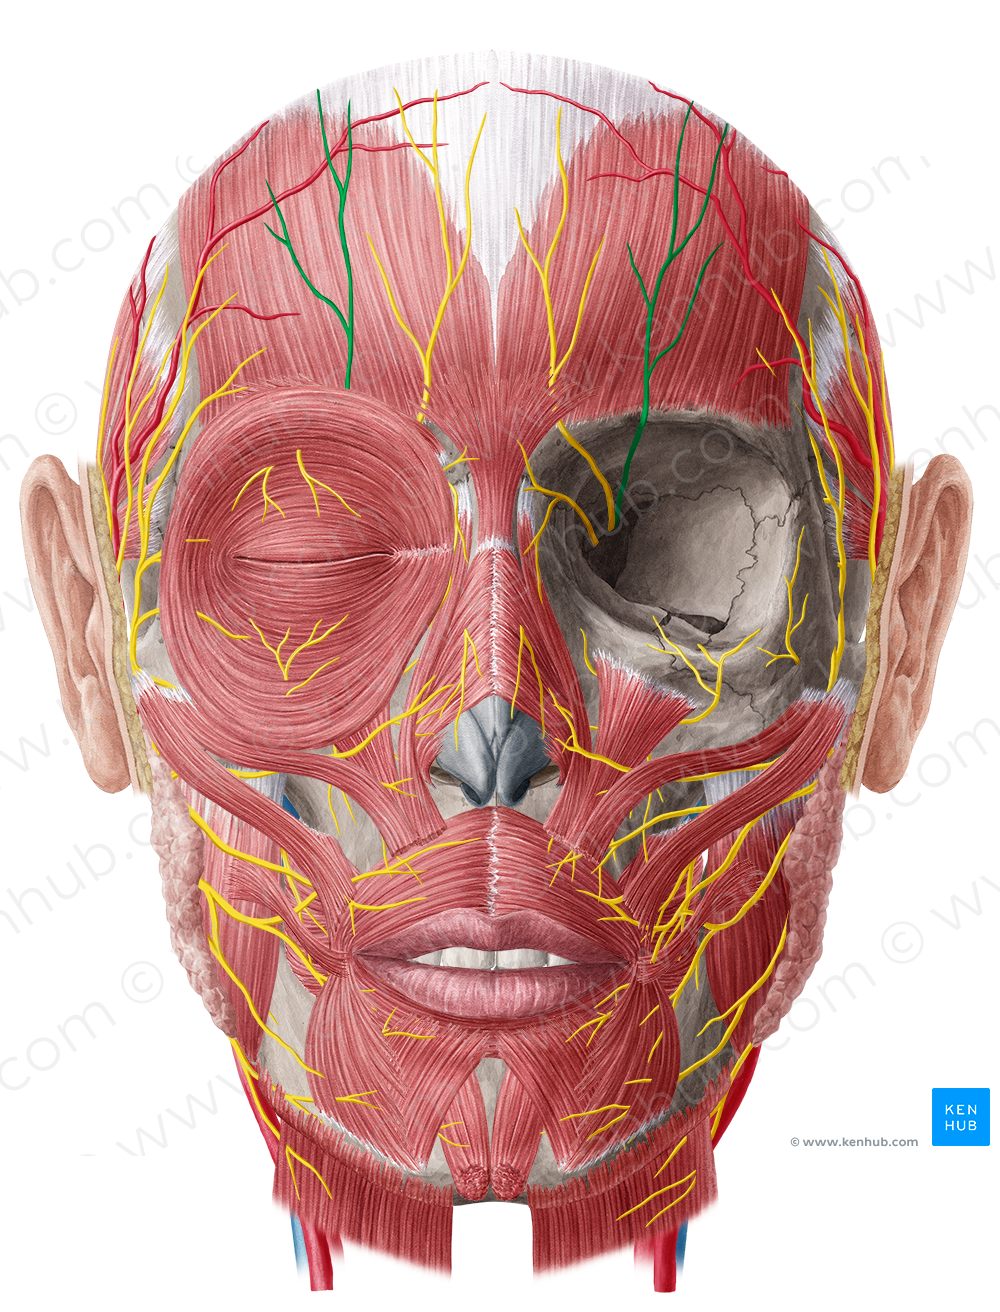 Supraorbital nerve (#6787)